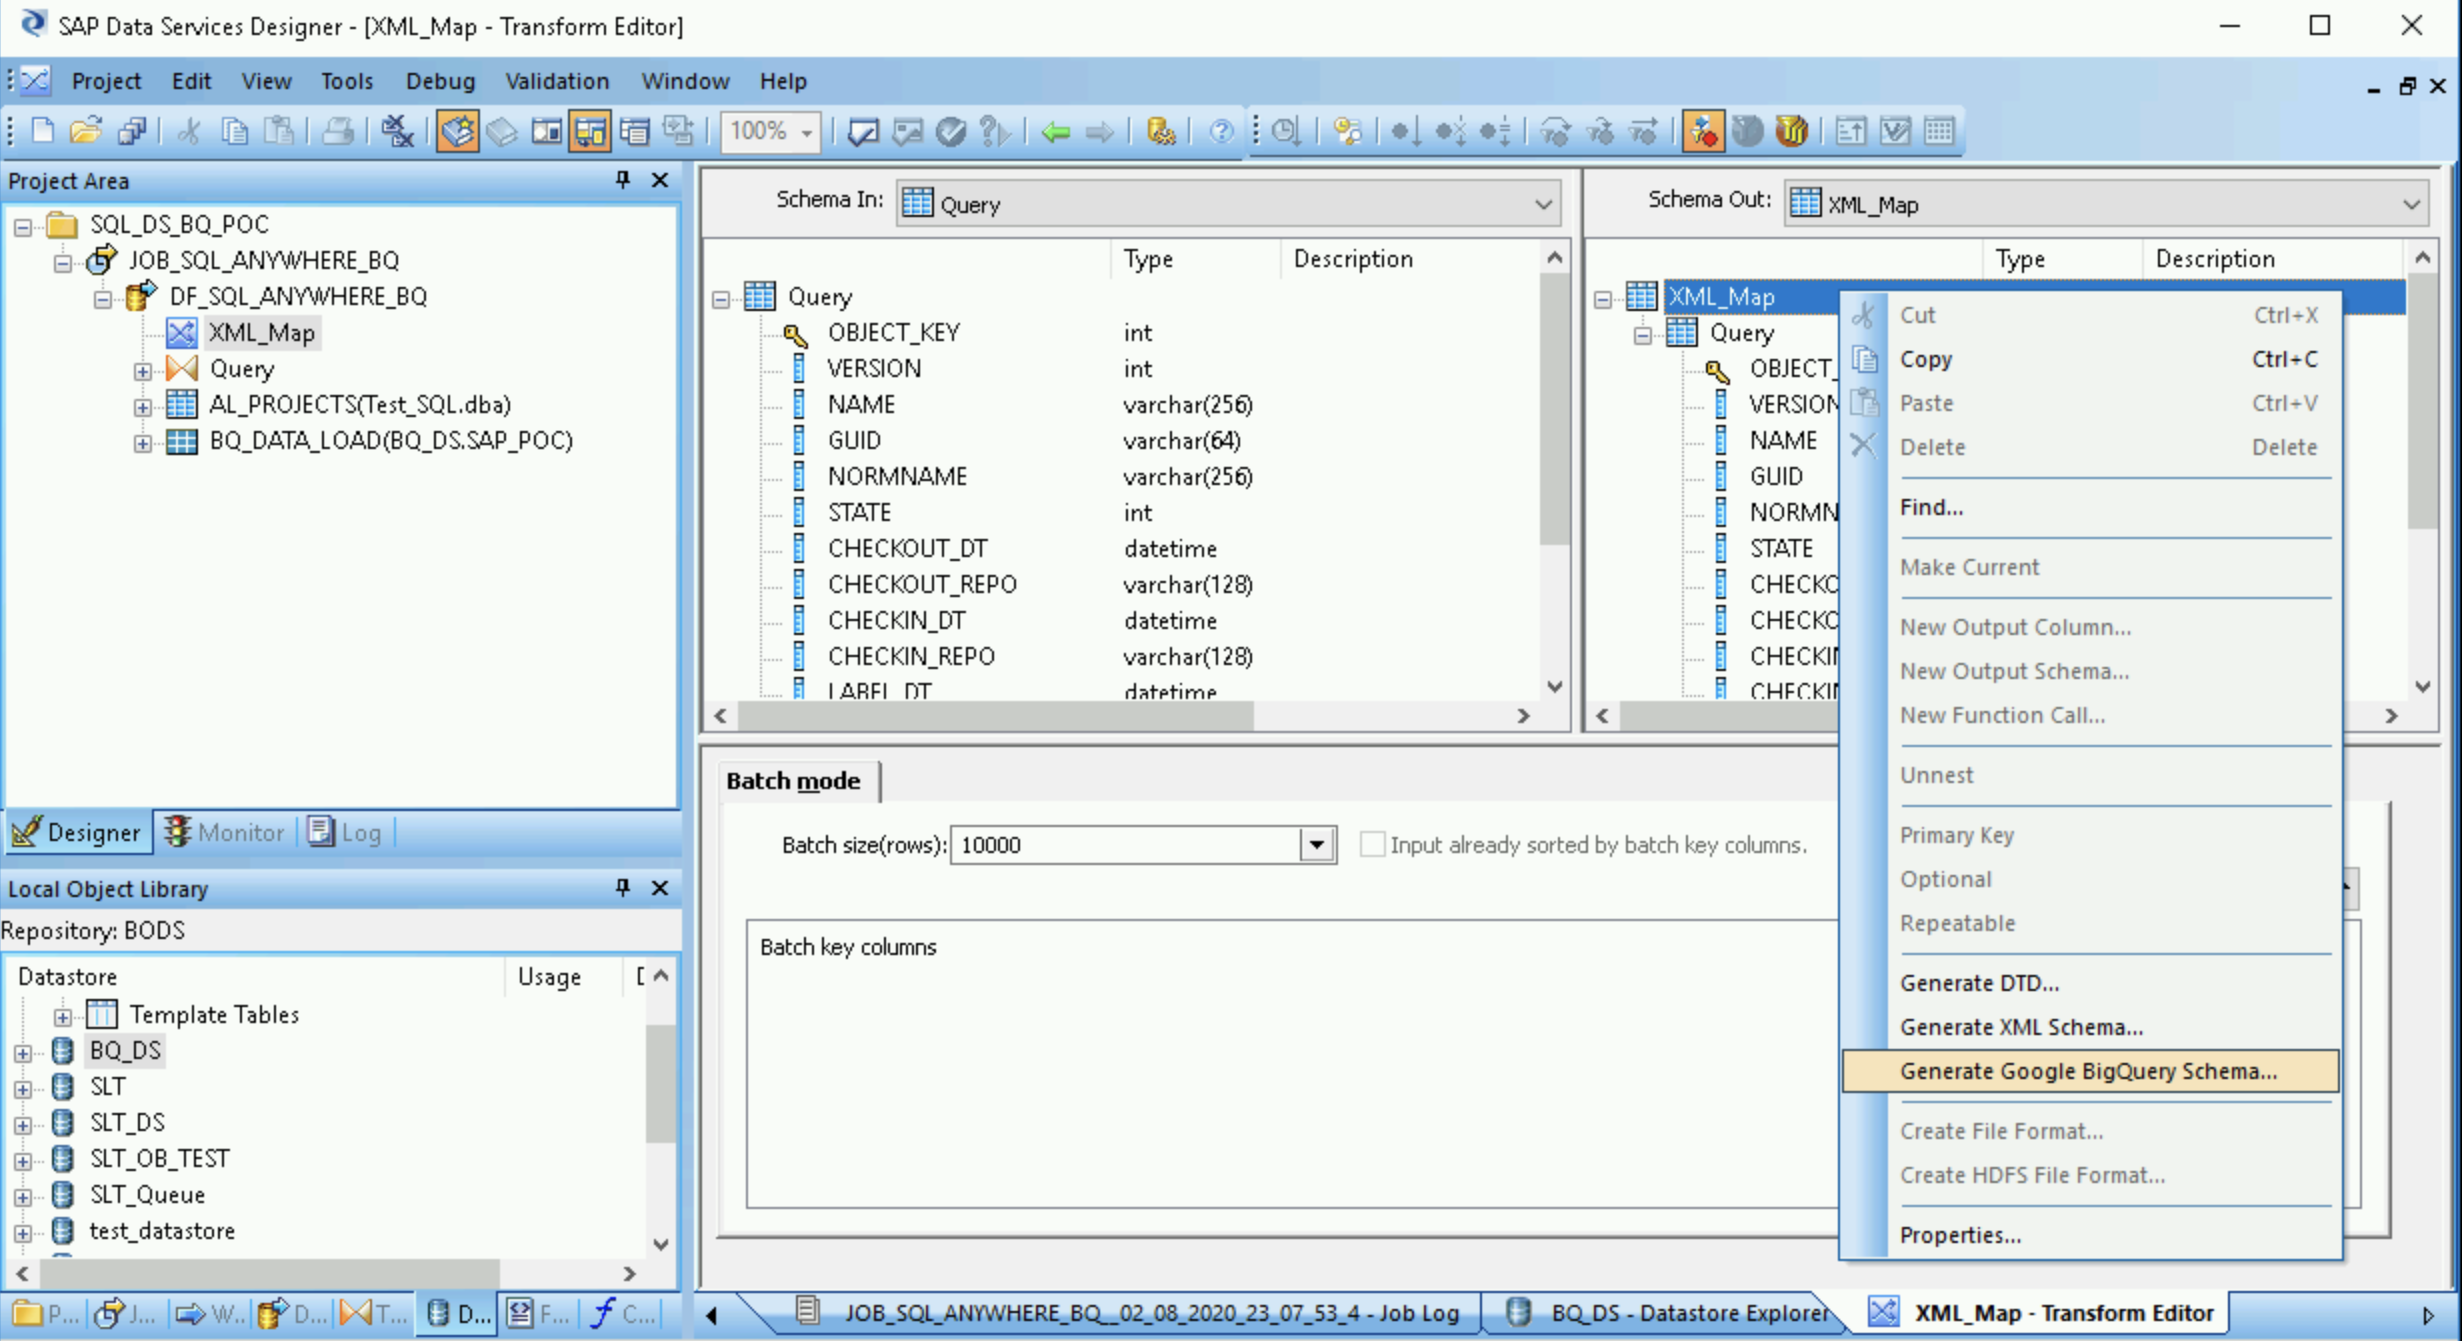 Capture d'écran du menu déroulant de SAP Data Services Designer permettant de générer un schéma Google BigQuery.